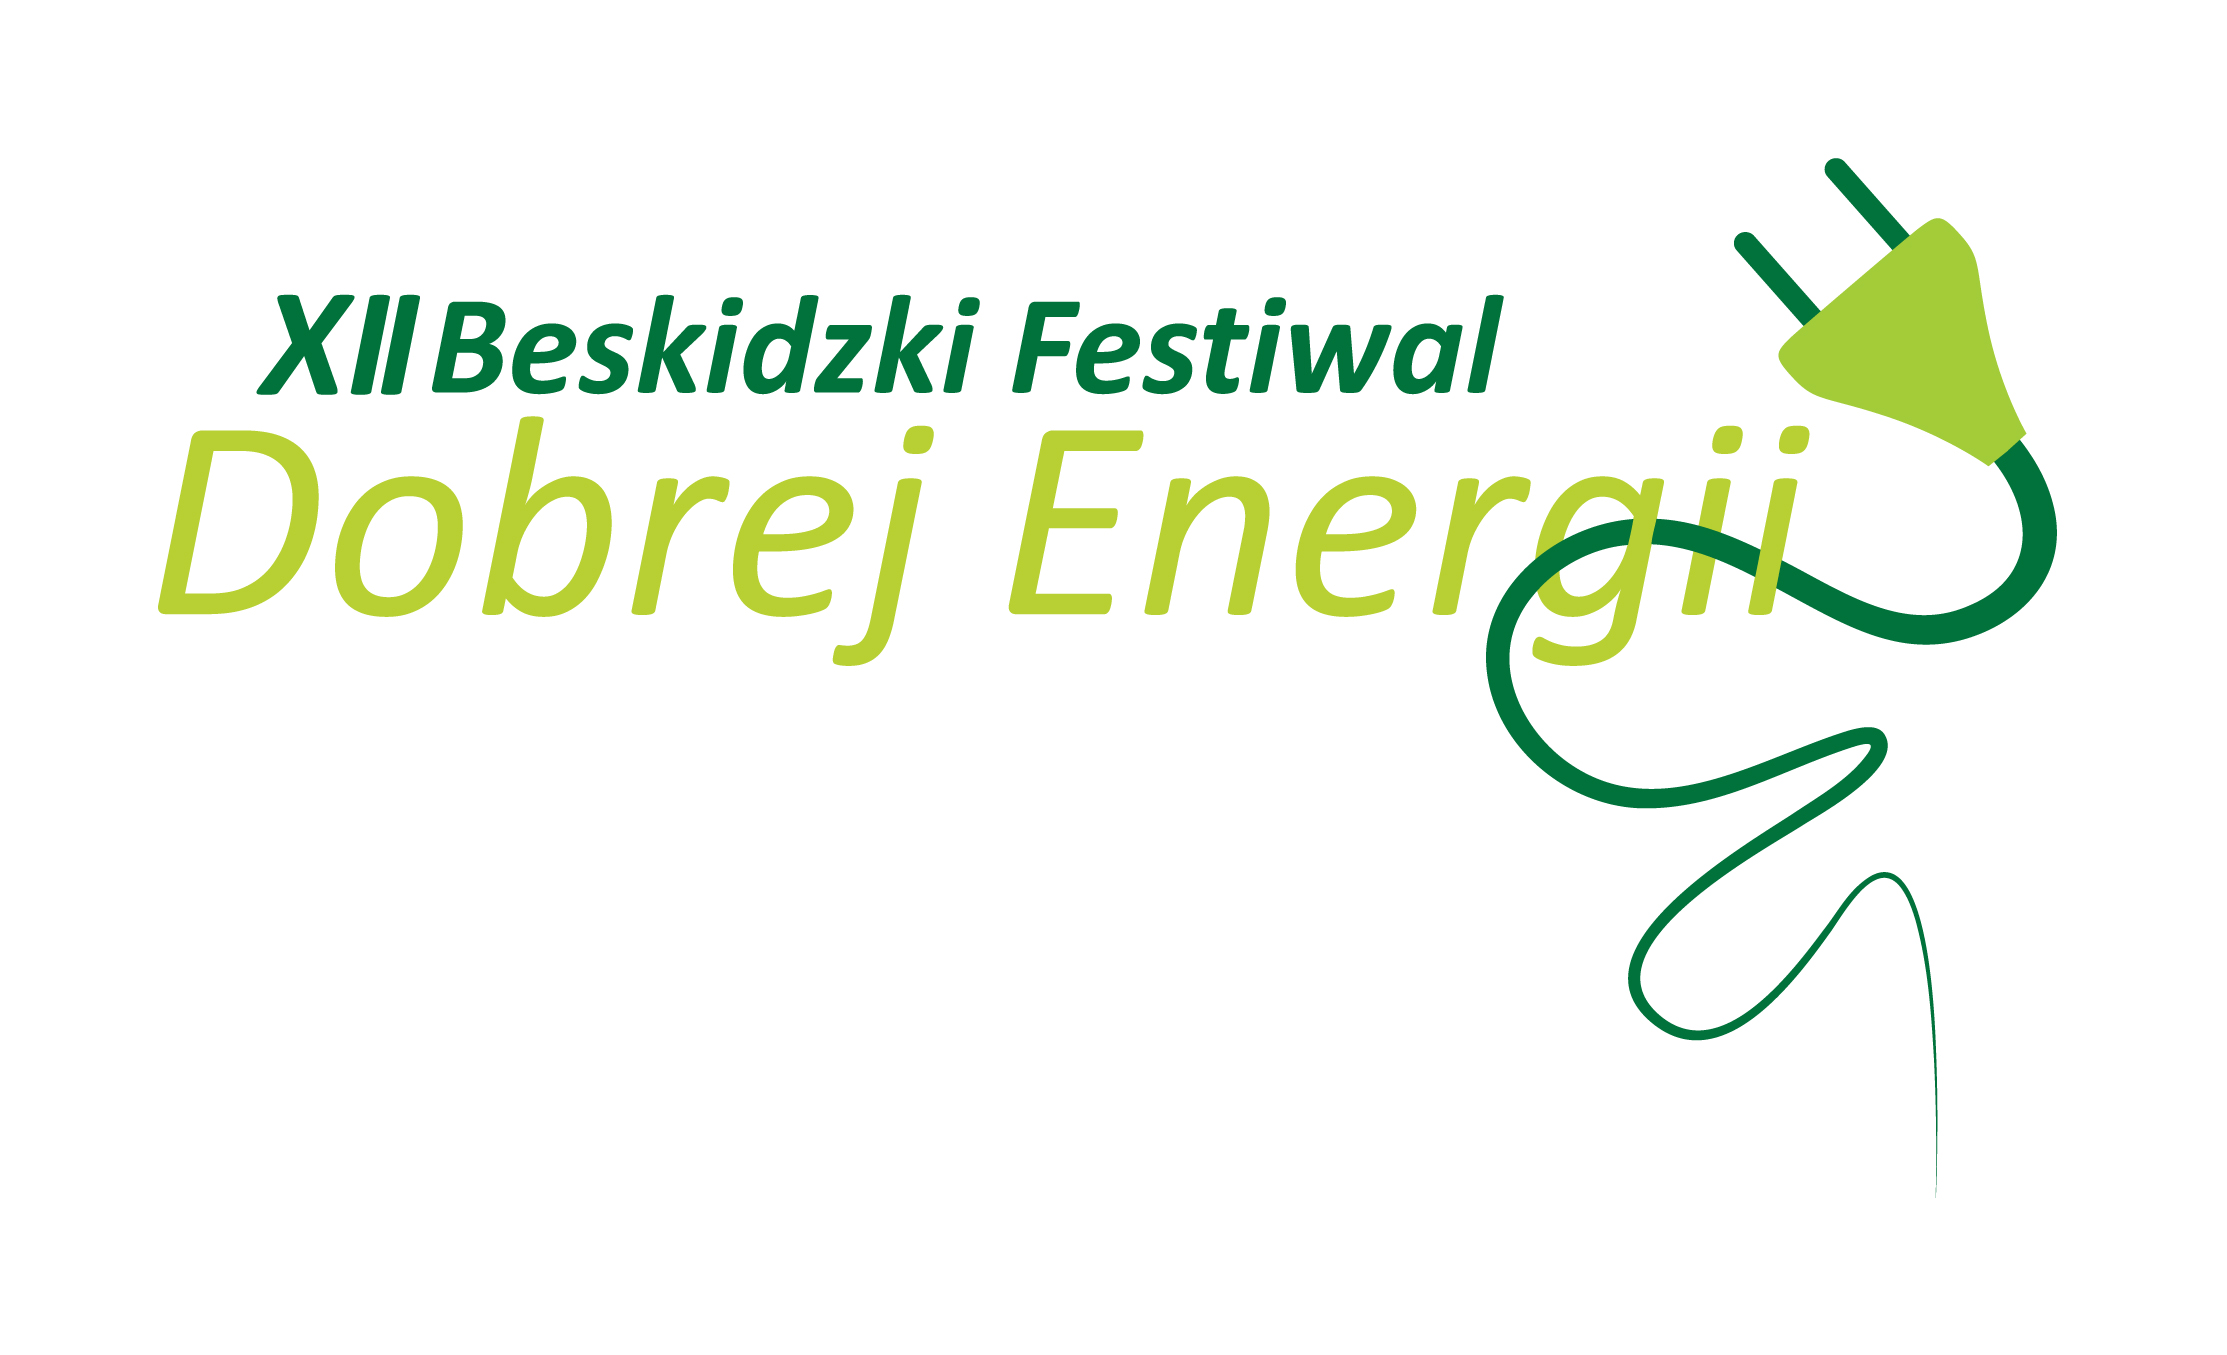  Ekologiczny zawrót głowy na zdjęciu logo festiwalu